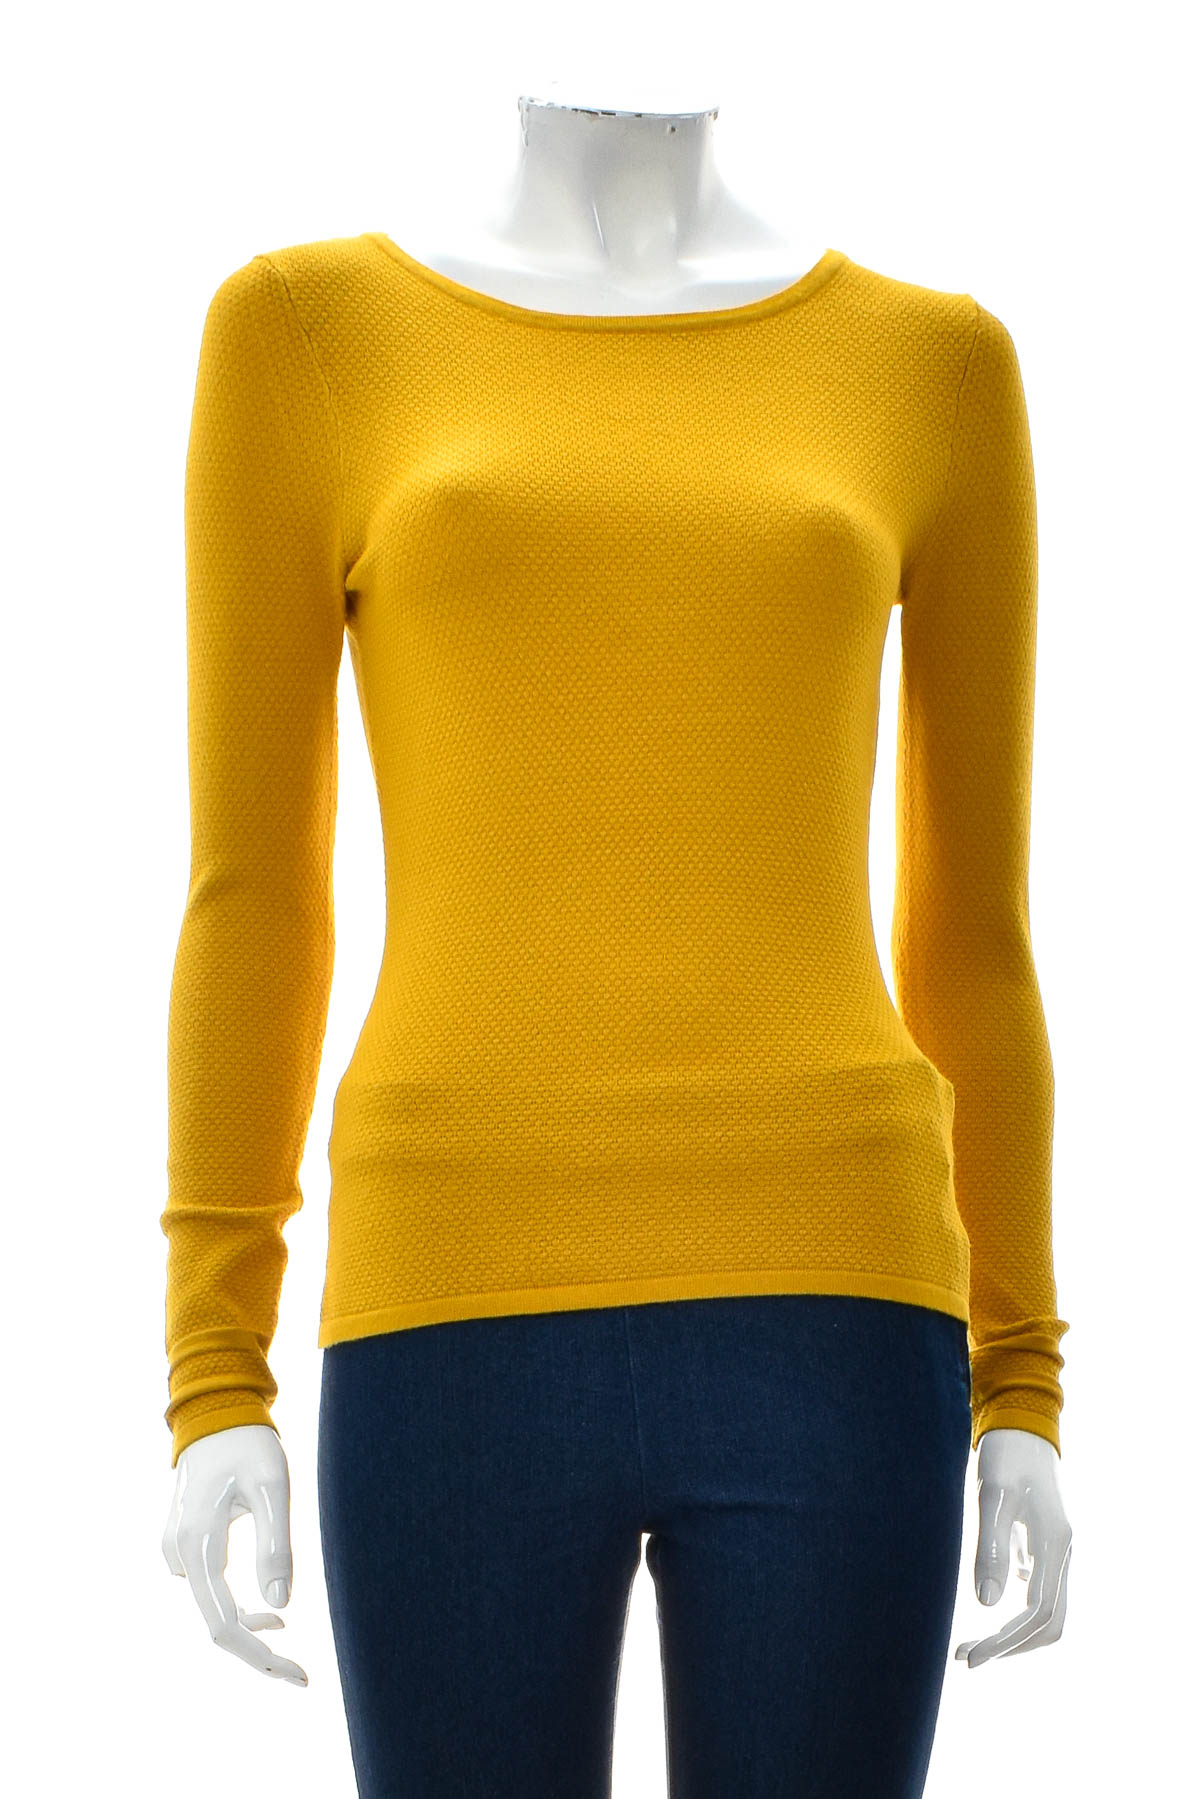 Women's sweater - Zero - 0